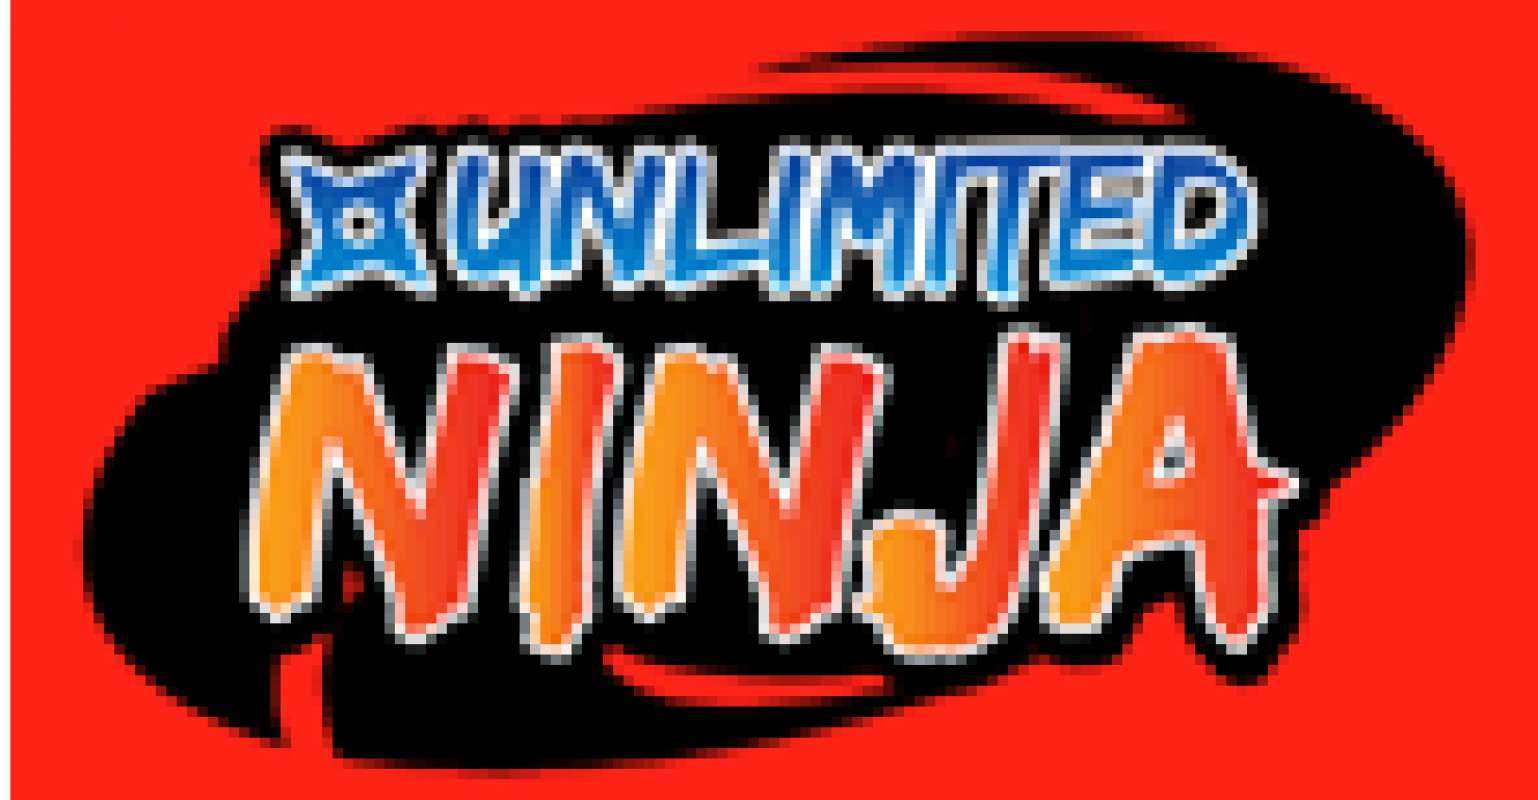 Unlimited Ninja